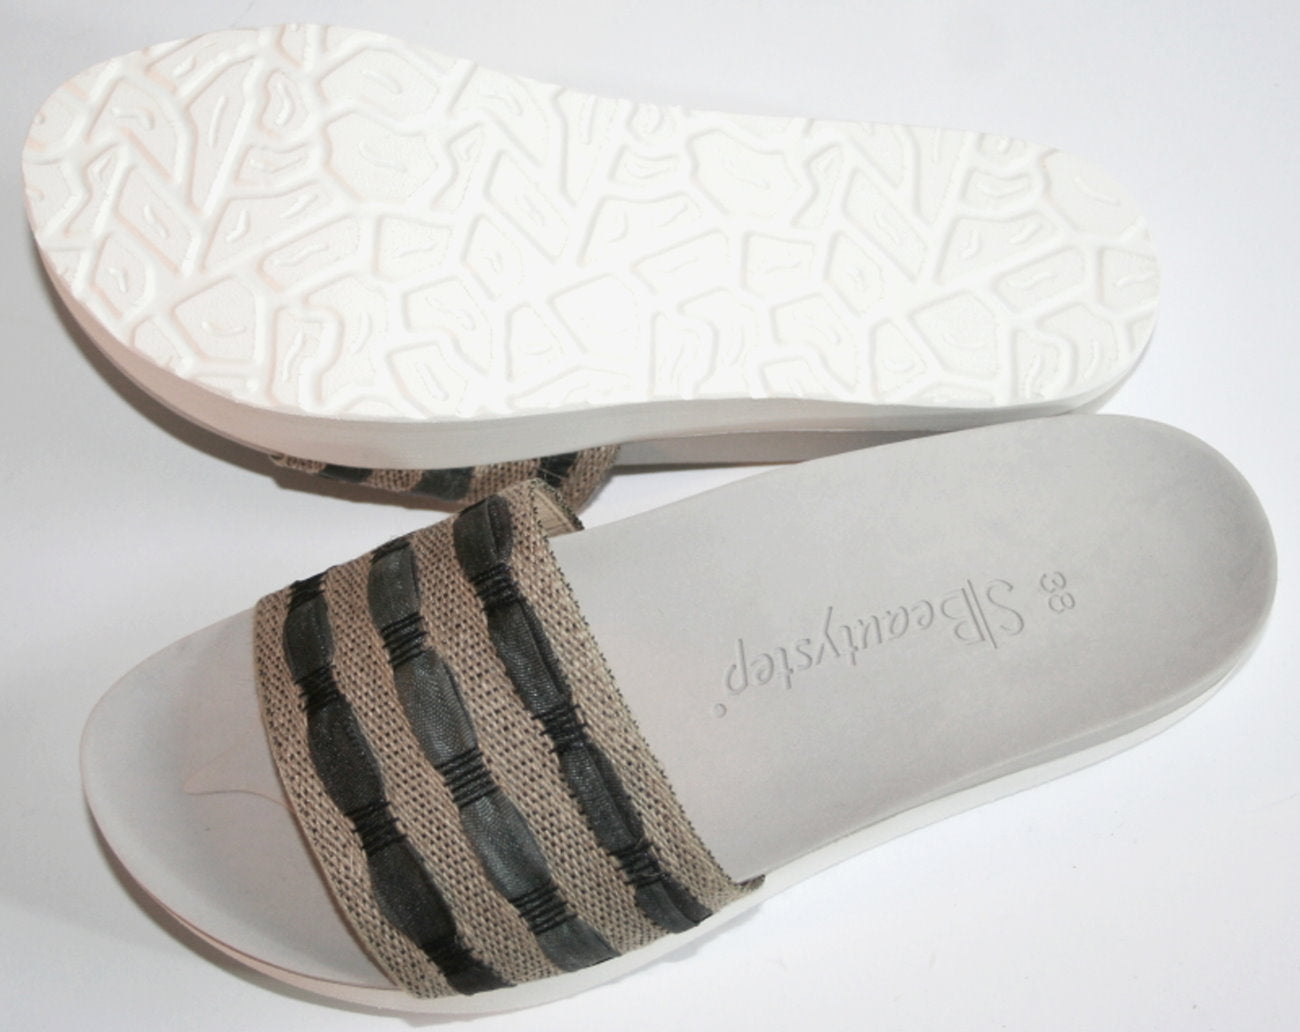 Beautystep® Aktiv Sandalen Schuhe Pantoletten Slipper Anti Cellulite Fußbett